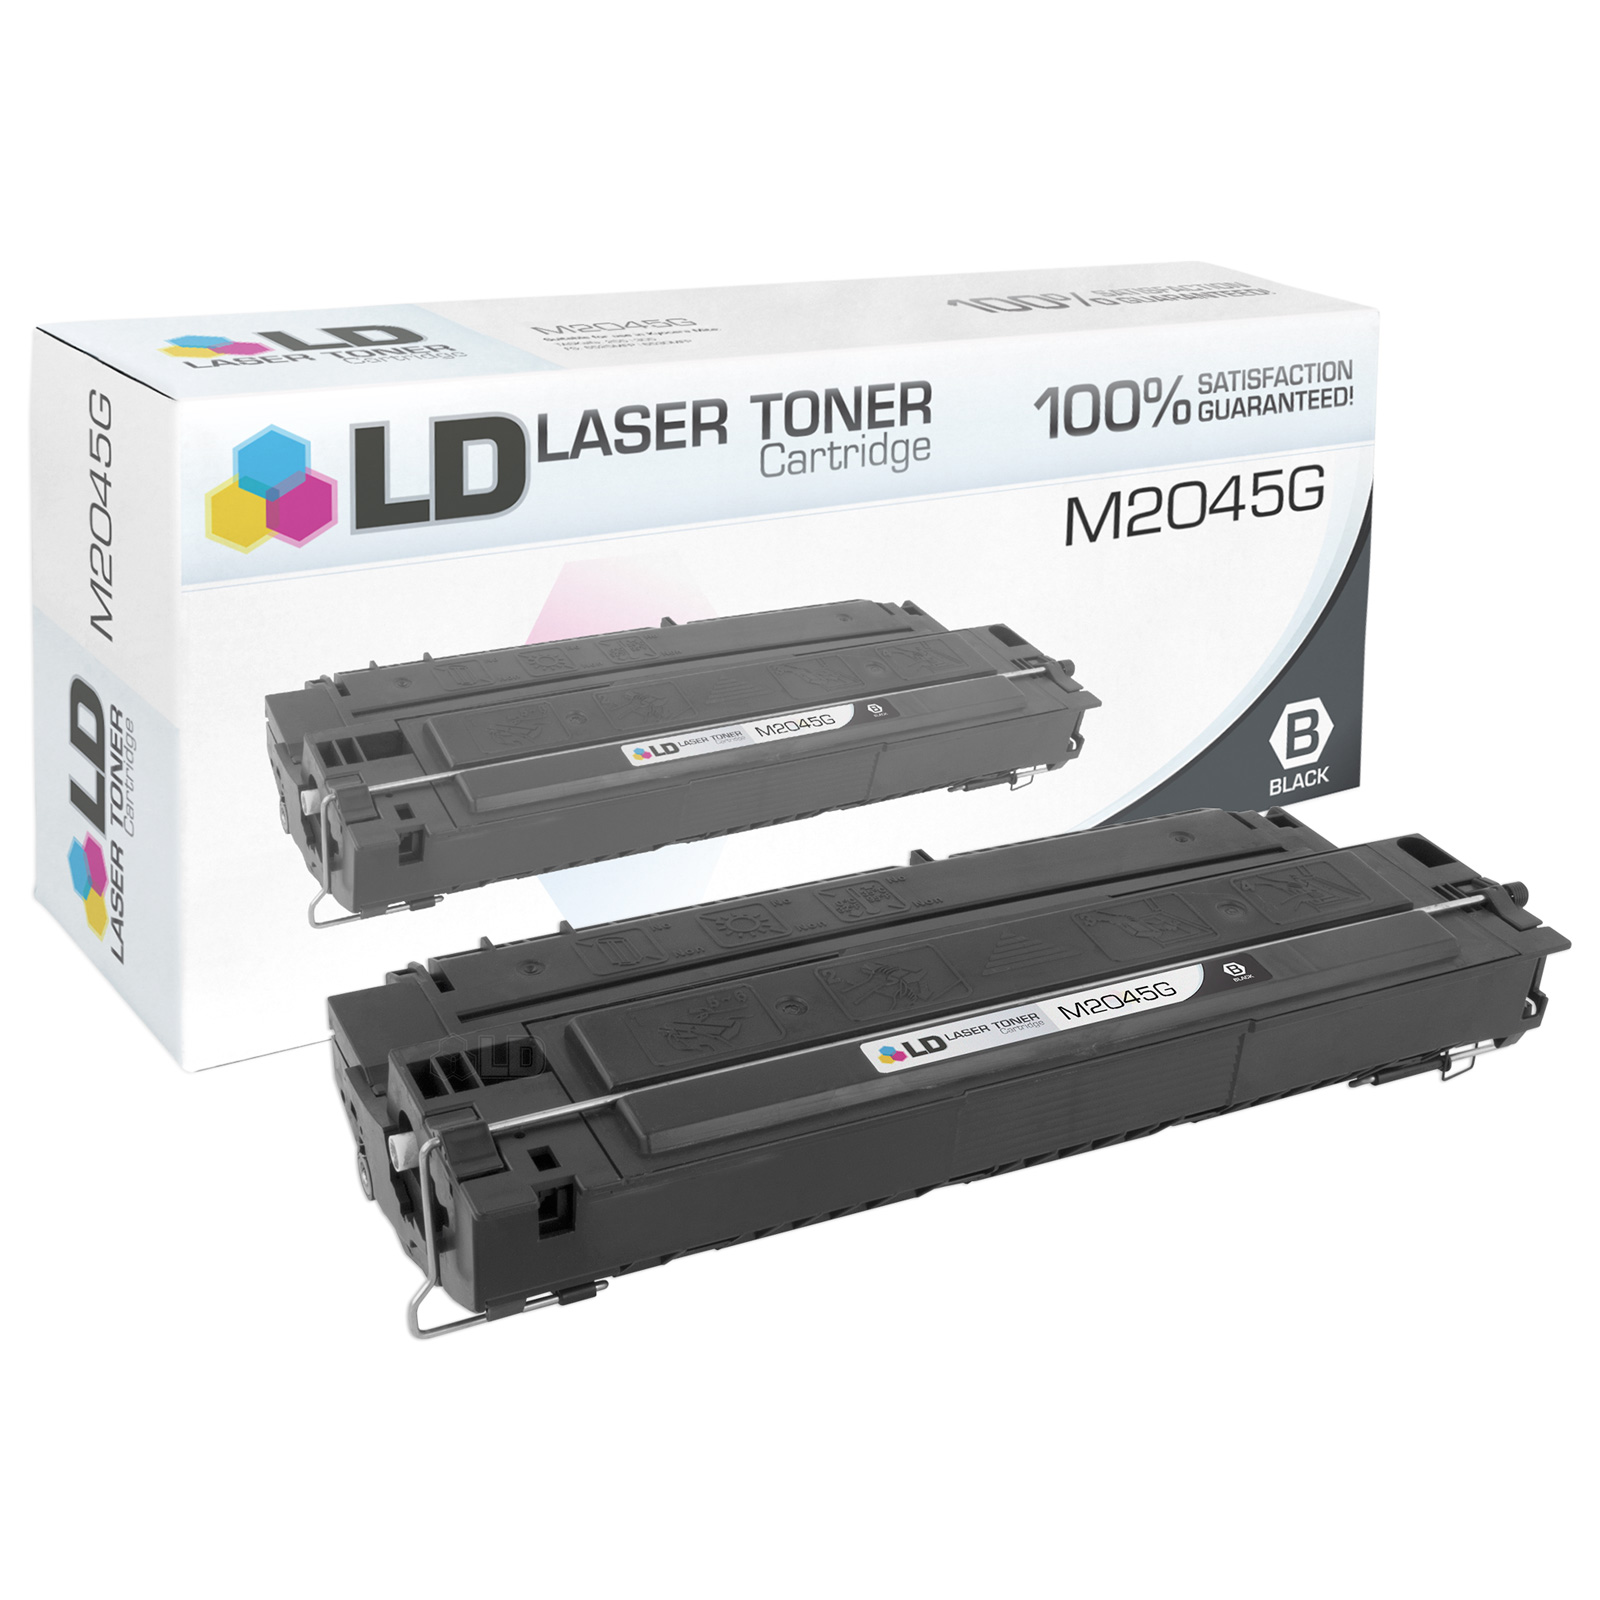 LD Remanufactured Apple M2045G Black Laser Toner Cartridge for LaserWriter 4 - image 1 of 1